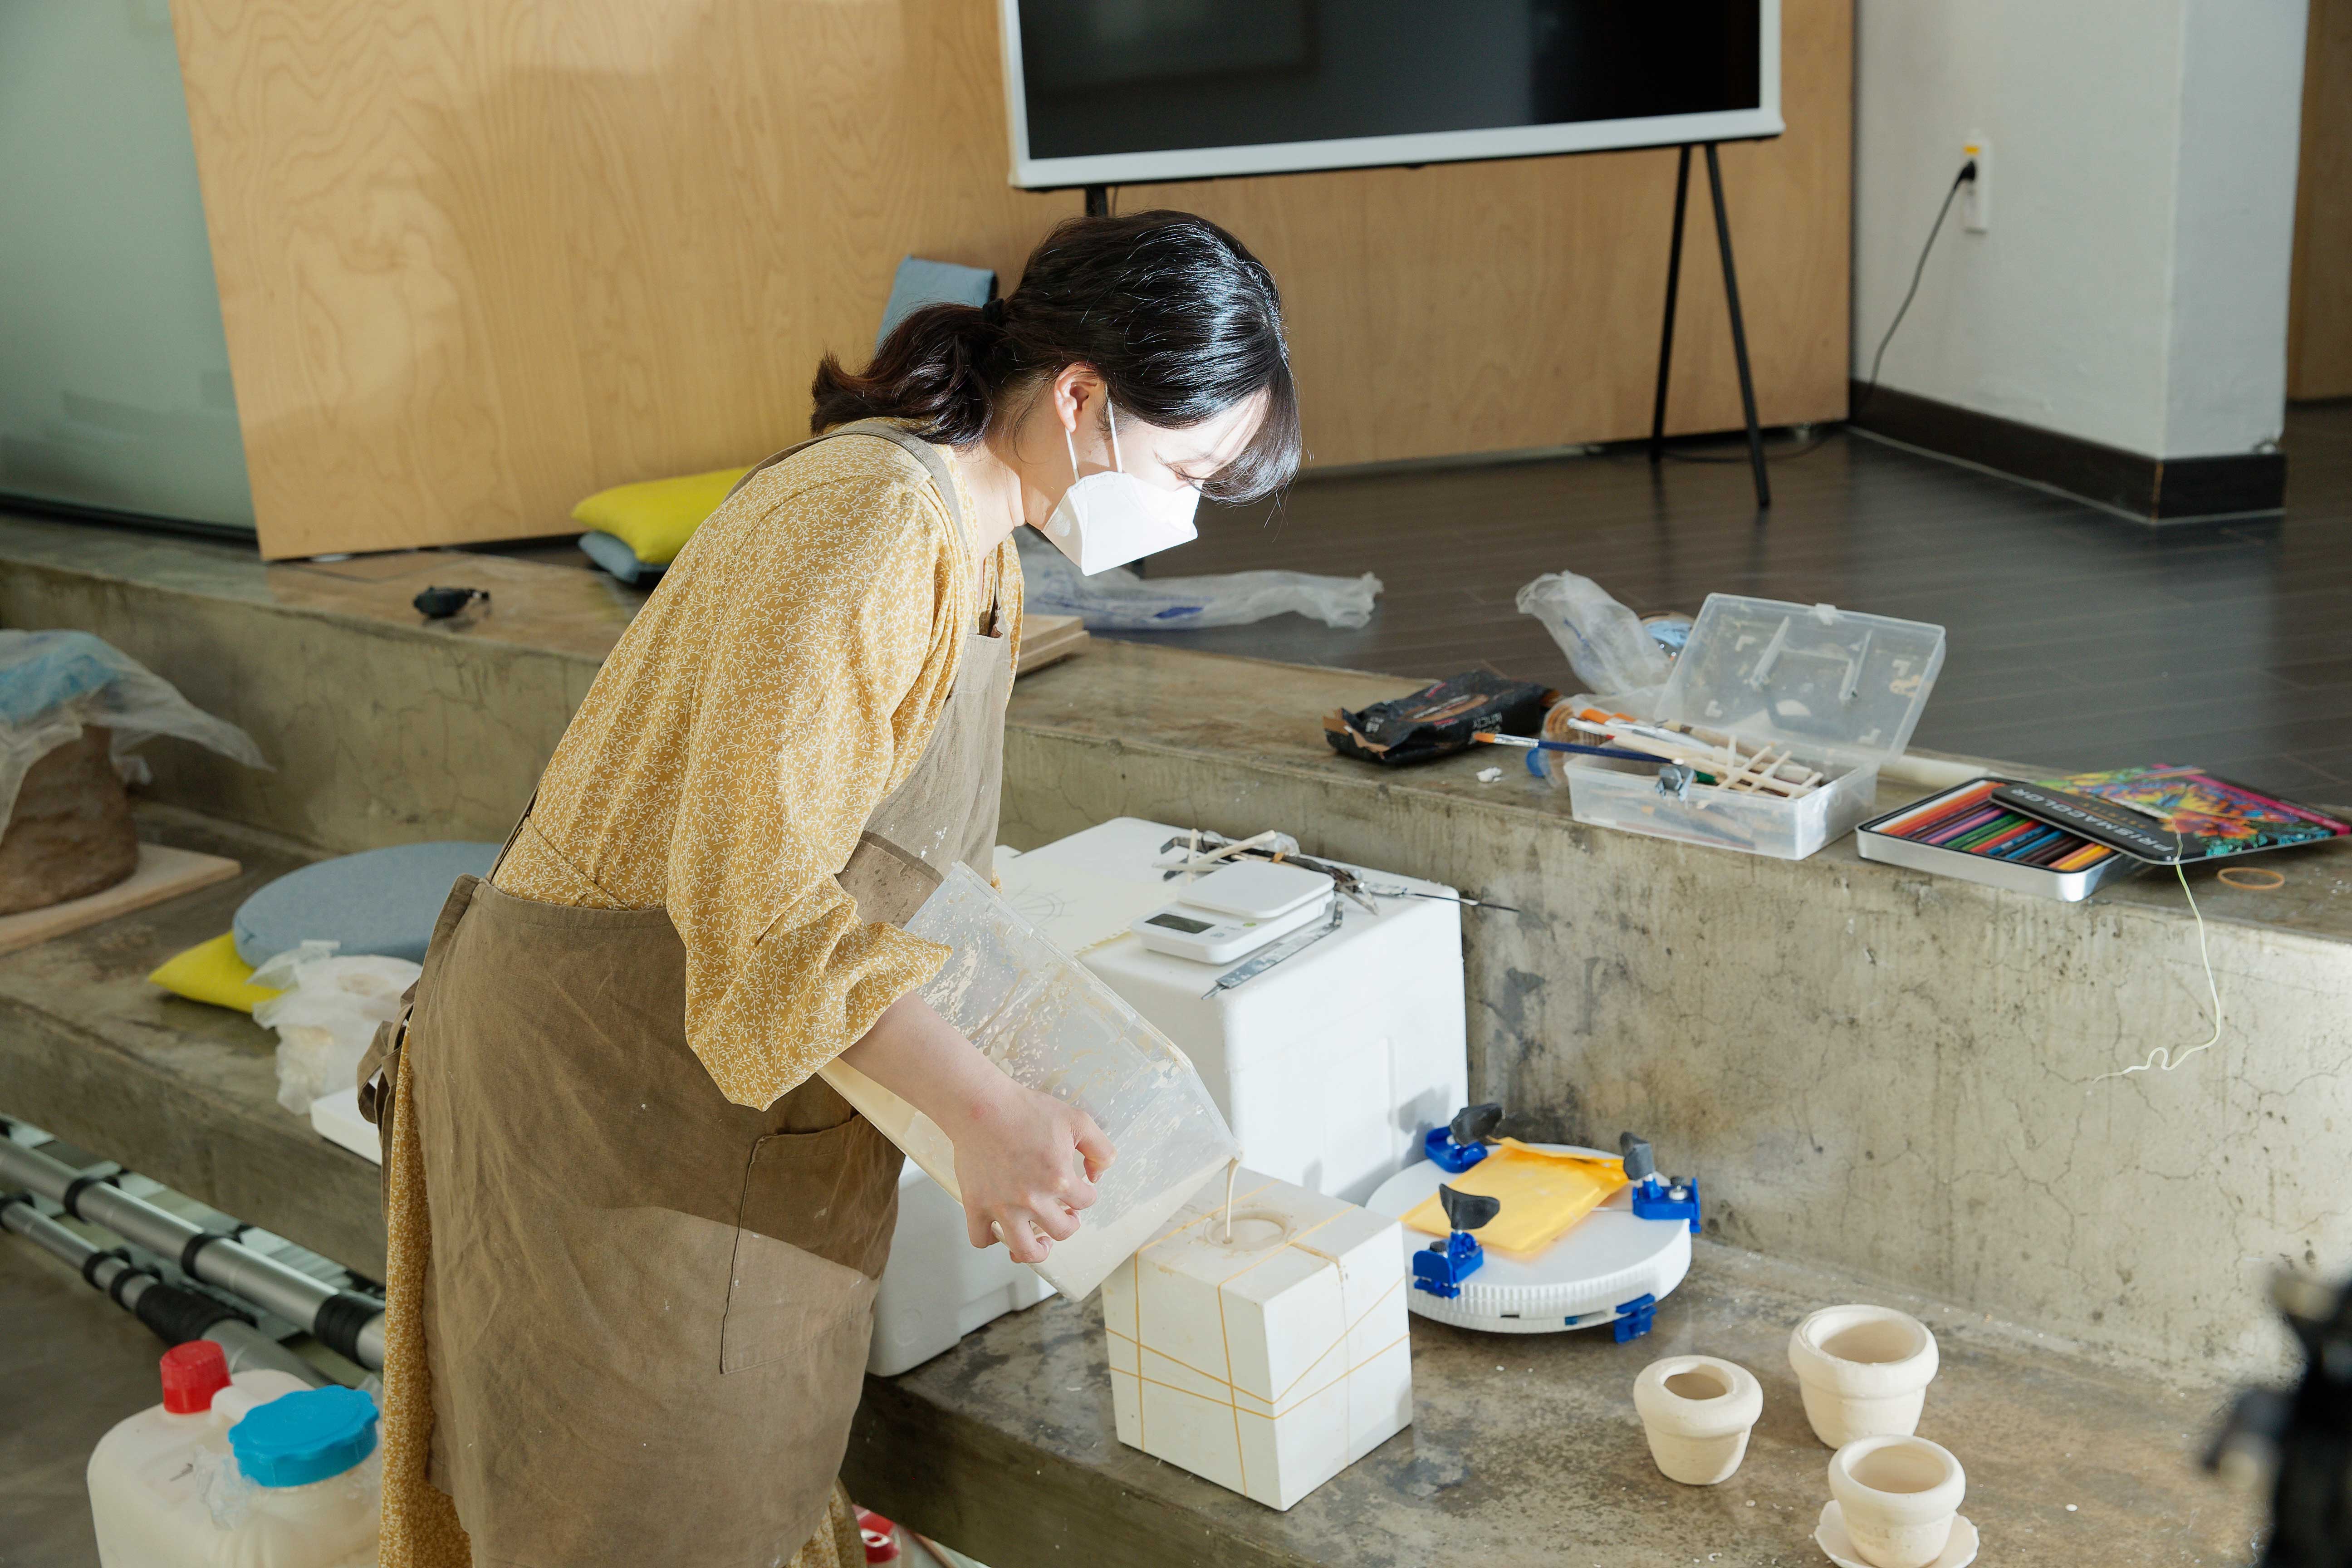 커피찌꺼기 등이 포함된 배합재료로 도자기를 만들고 있는 이예나 작가 | 사진: 김경채